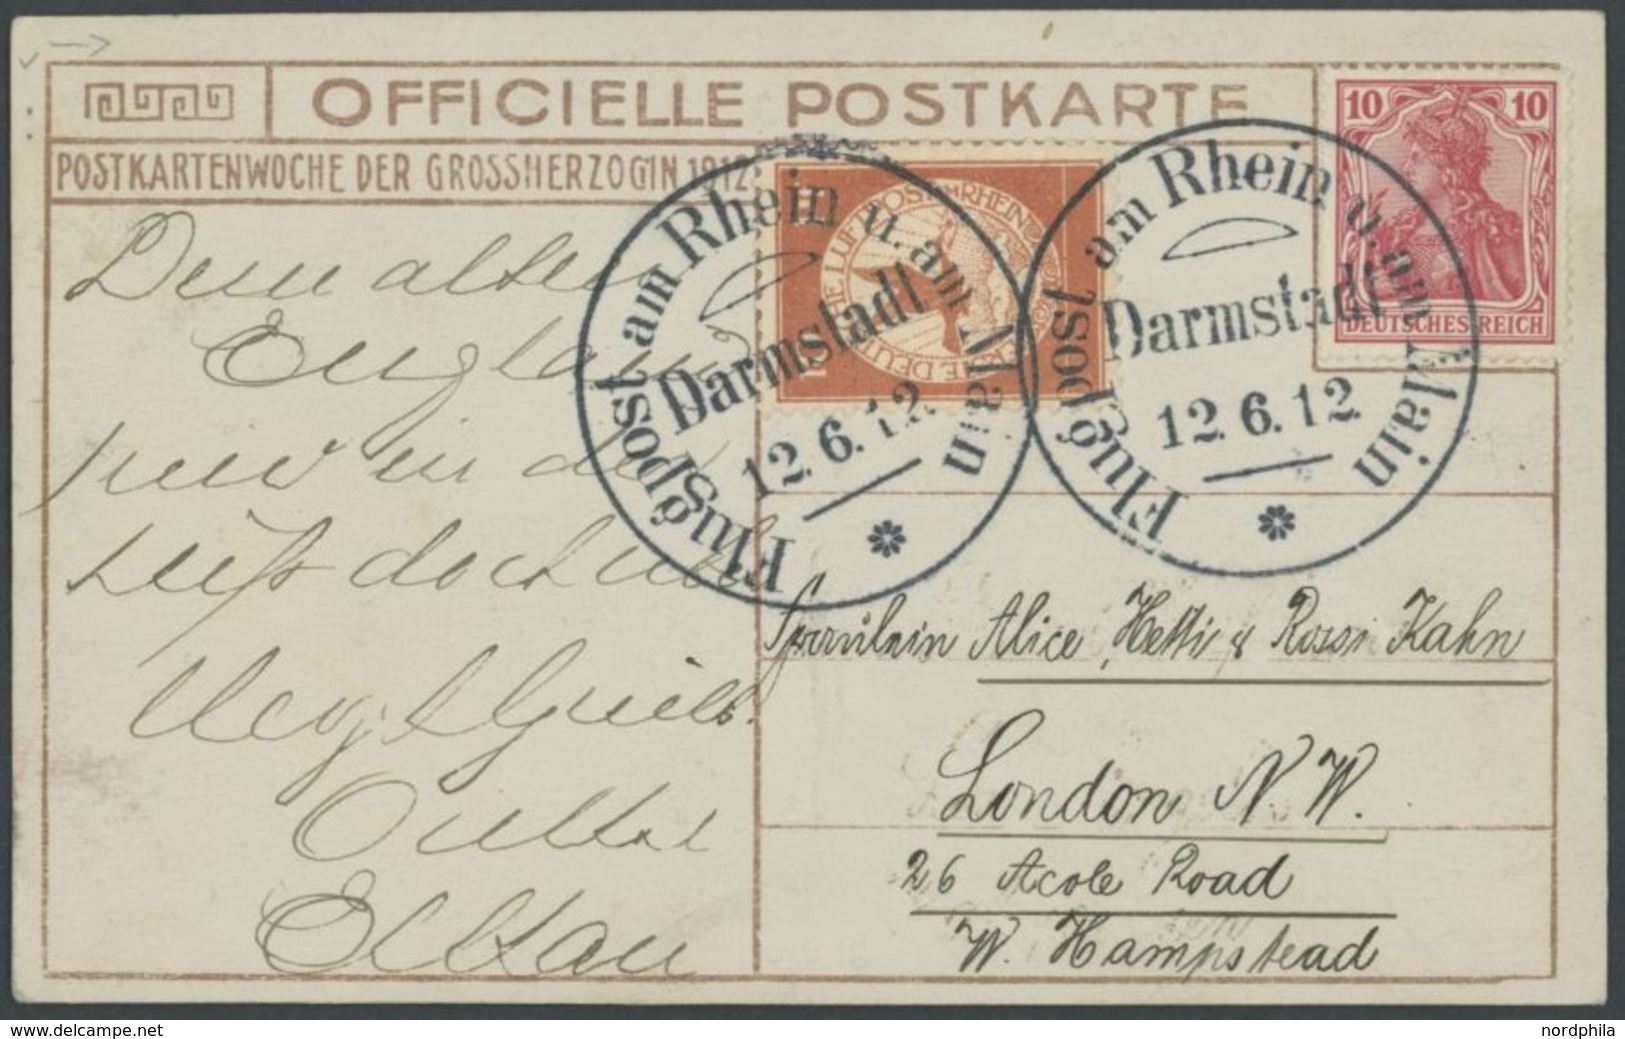 1912, 10 Pf. Flp. Am Rhein Und Main Auf Flugpostkarte (Großherzogin) Mit 10 Pf. Zusatzfrankatur, Sonderstempel Darmstadt - Luft- Und Zeppelinpost